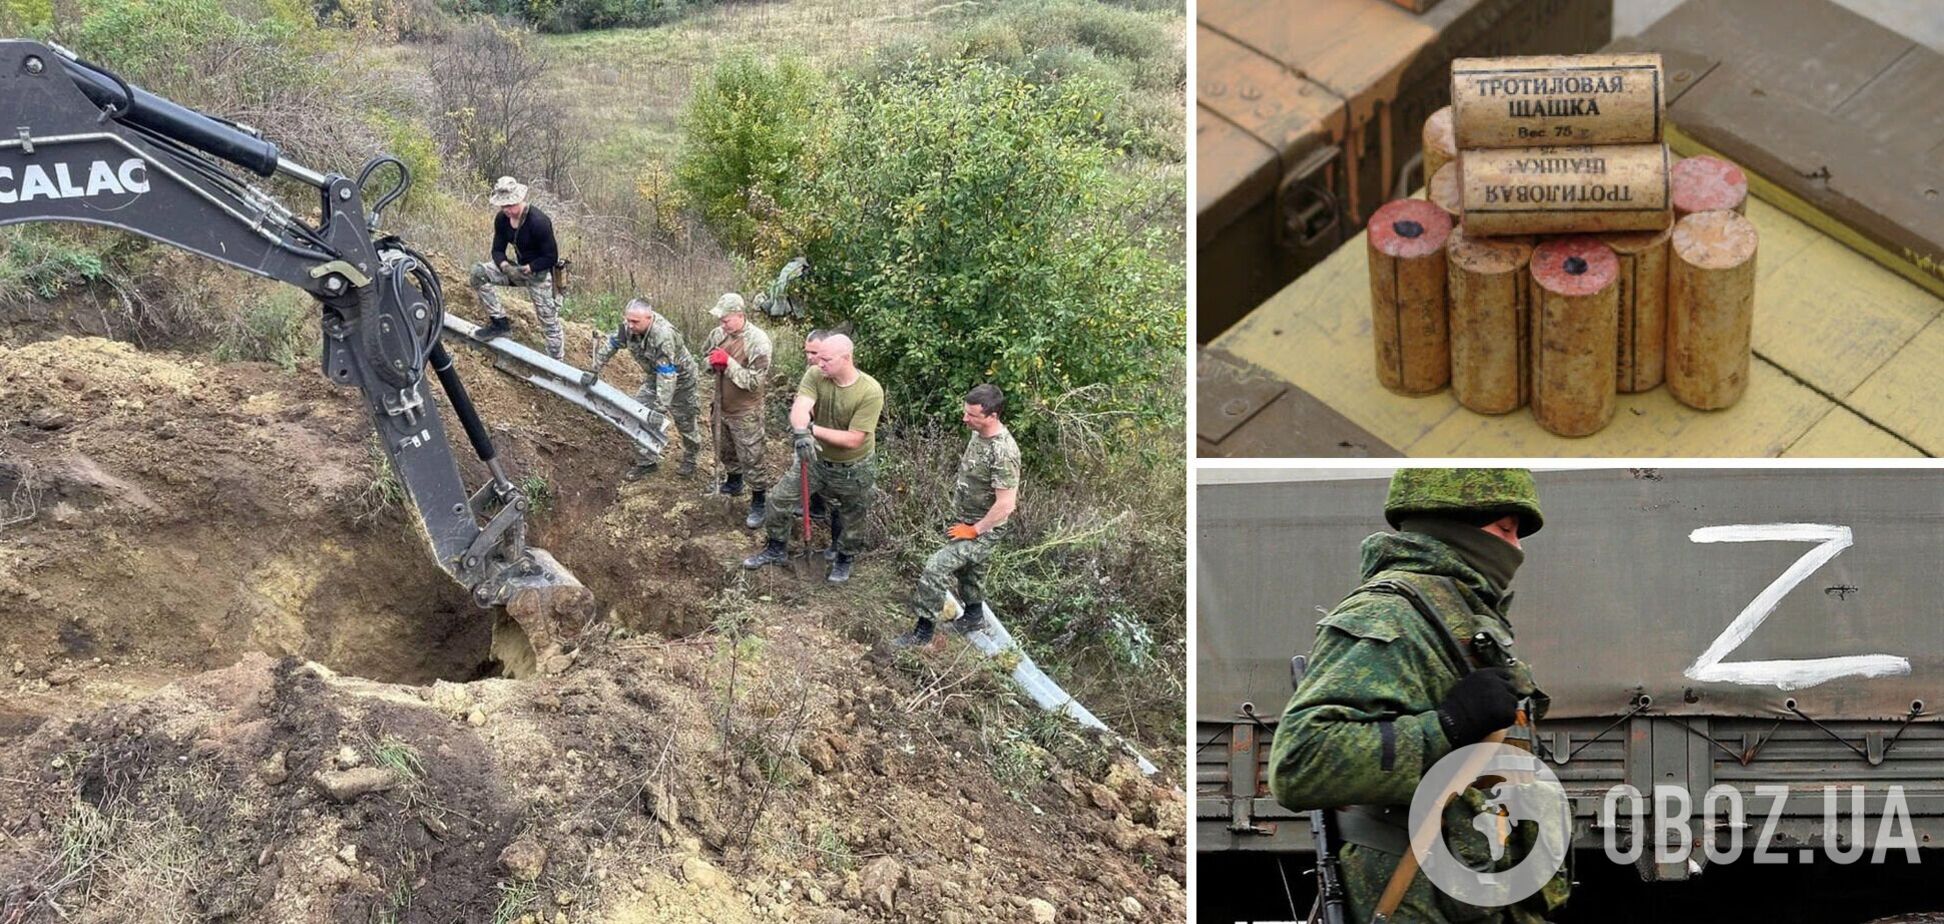 На Харківщині розмінували дамбу після окупації: вибухівки знайшли більше, ніж використали для підриву 'Північного потоку'